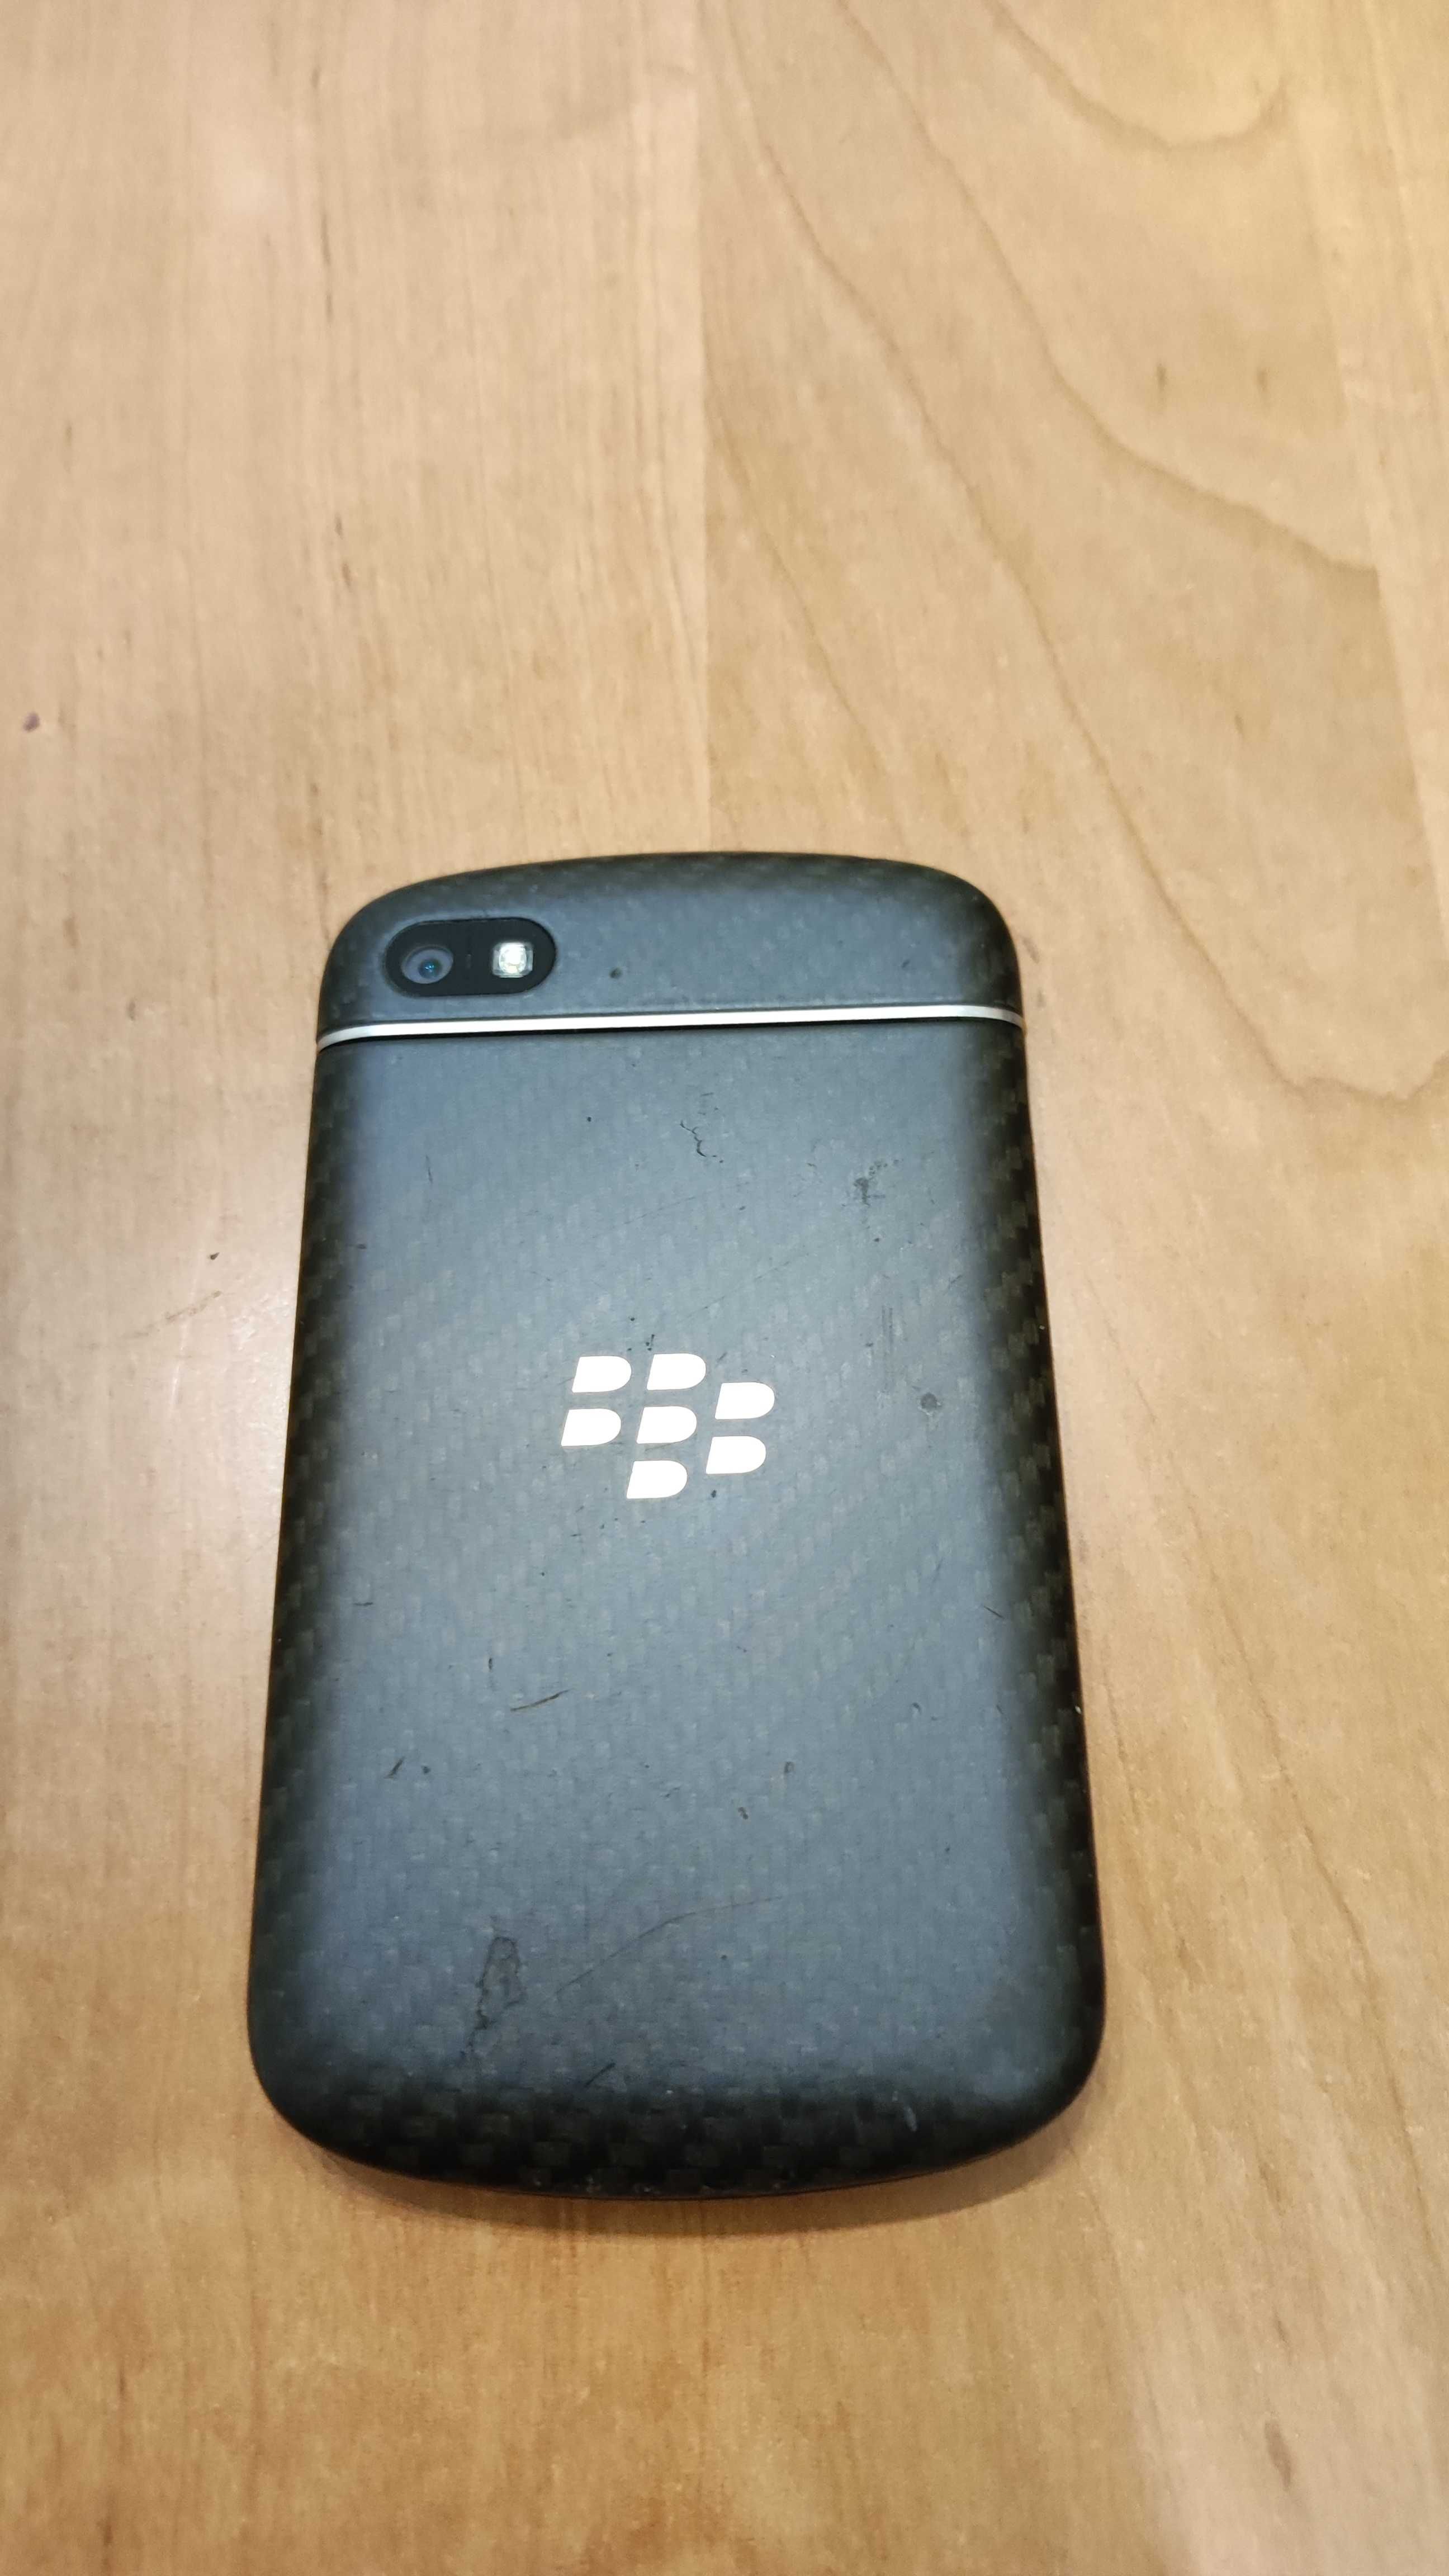 BlackBerry Q10 - bogaty zestaw